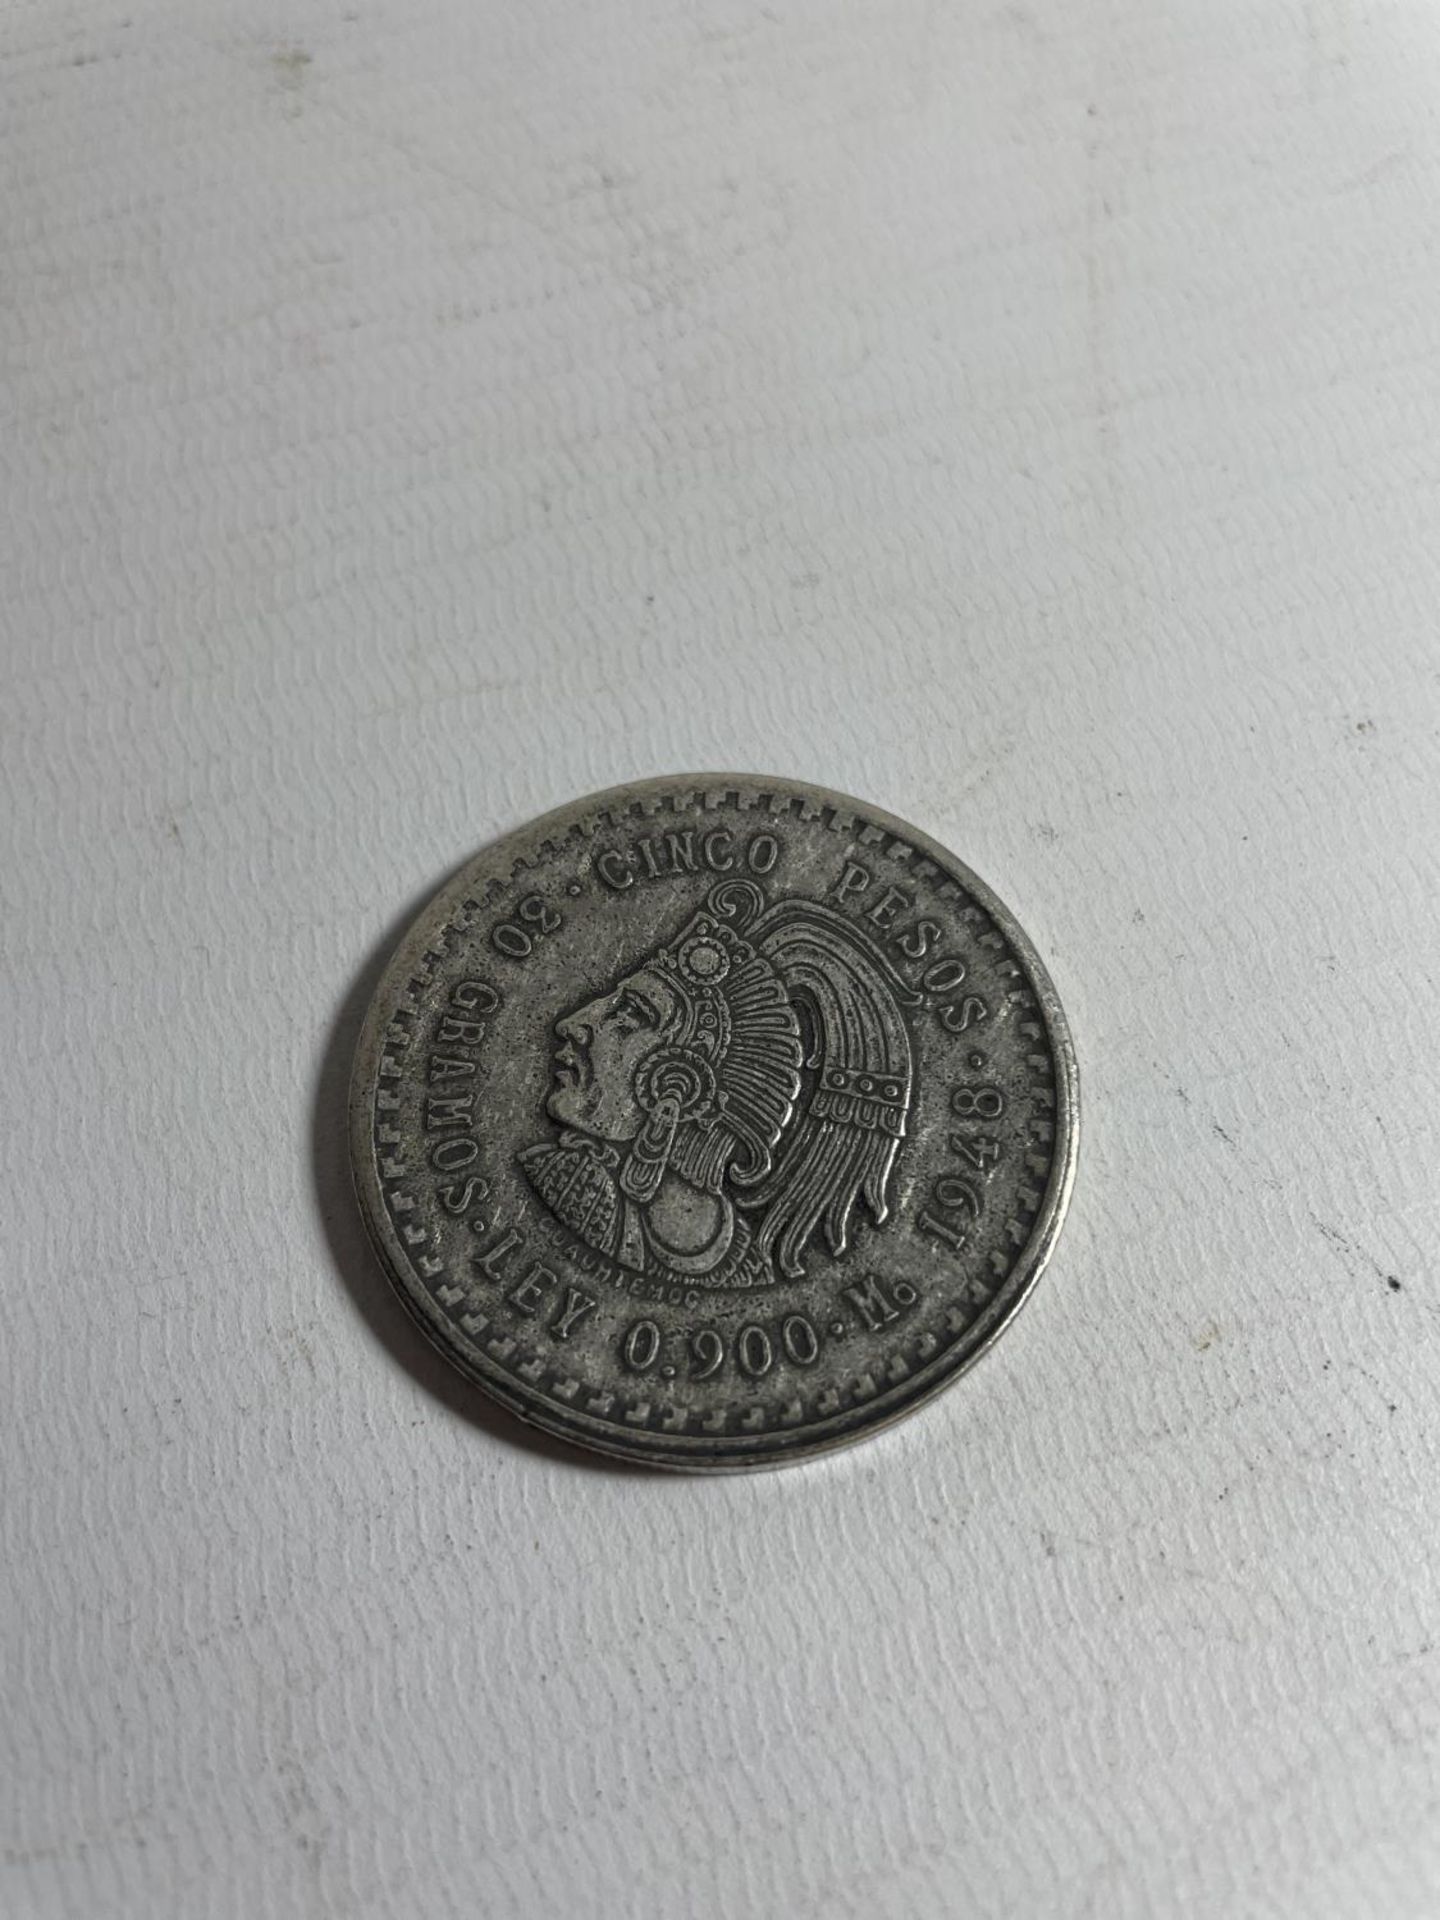 MEXICO , 1848 , 50 PESO SILVER COIN .